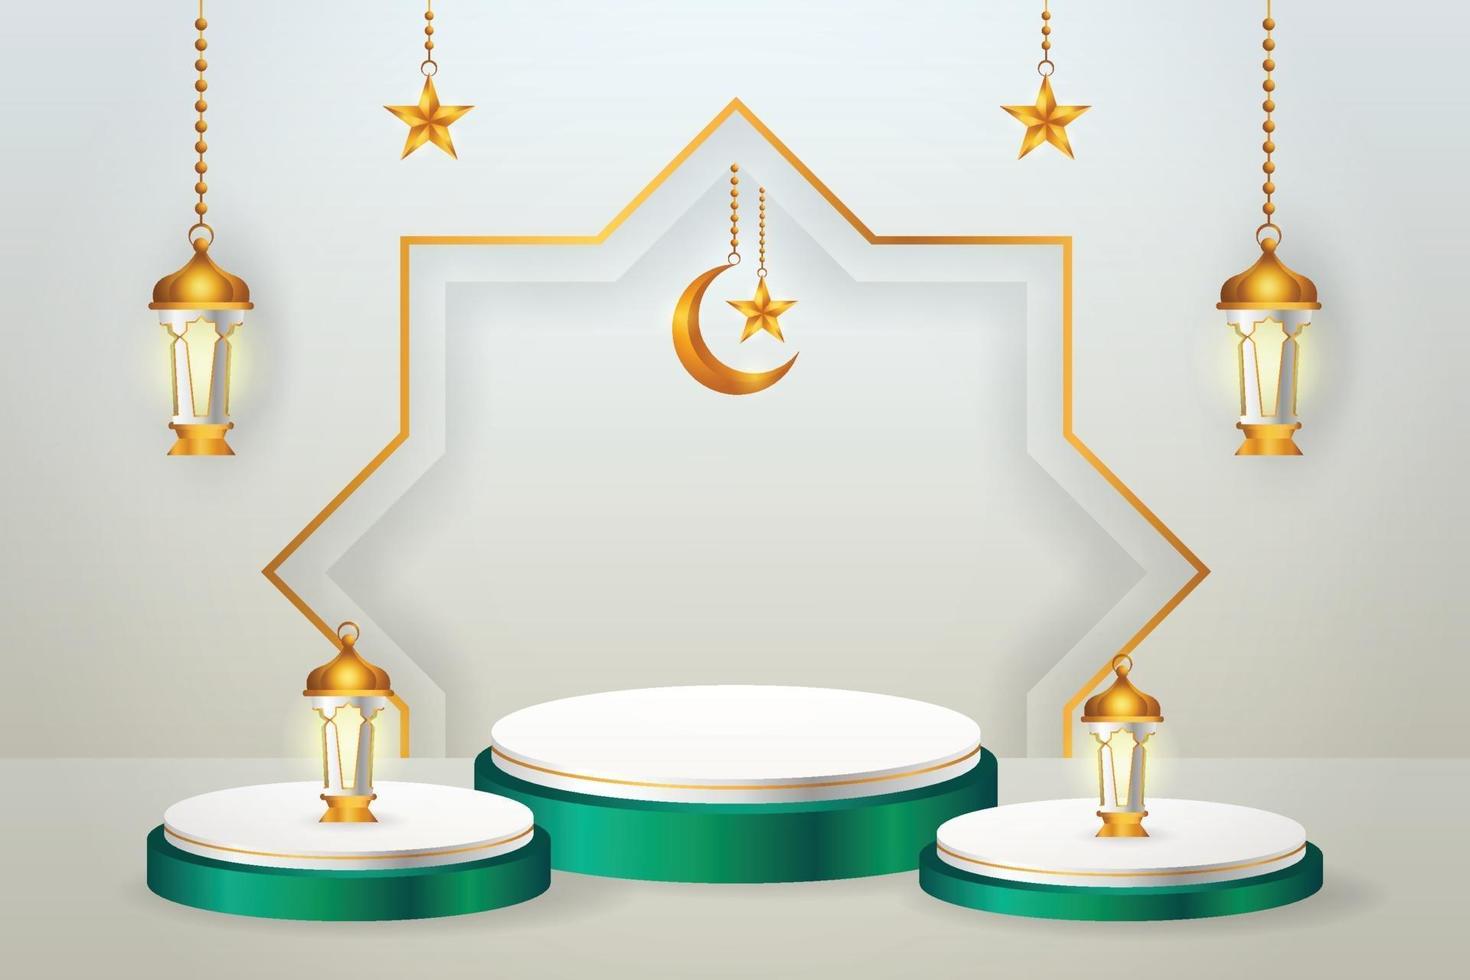 Exhibición de productos 3d podio verde y blanco temático islámico con luna creciente, linterna y estrella para ramadán vector